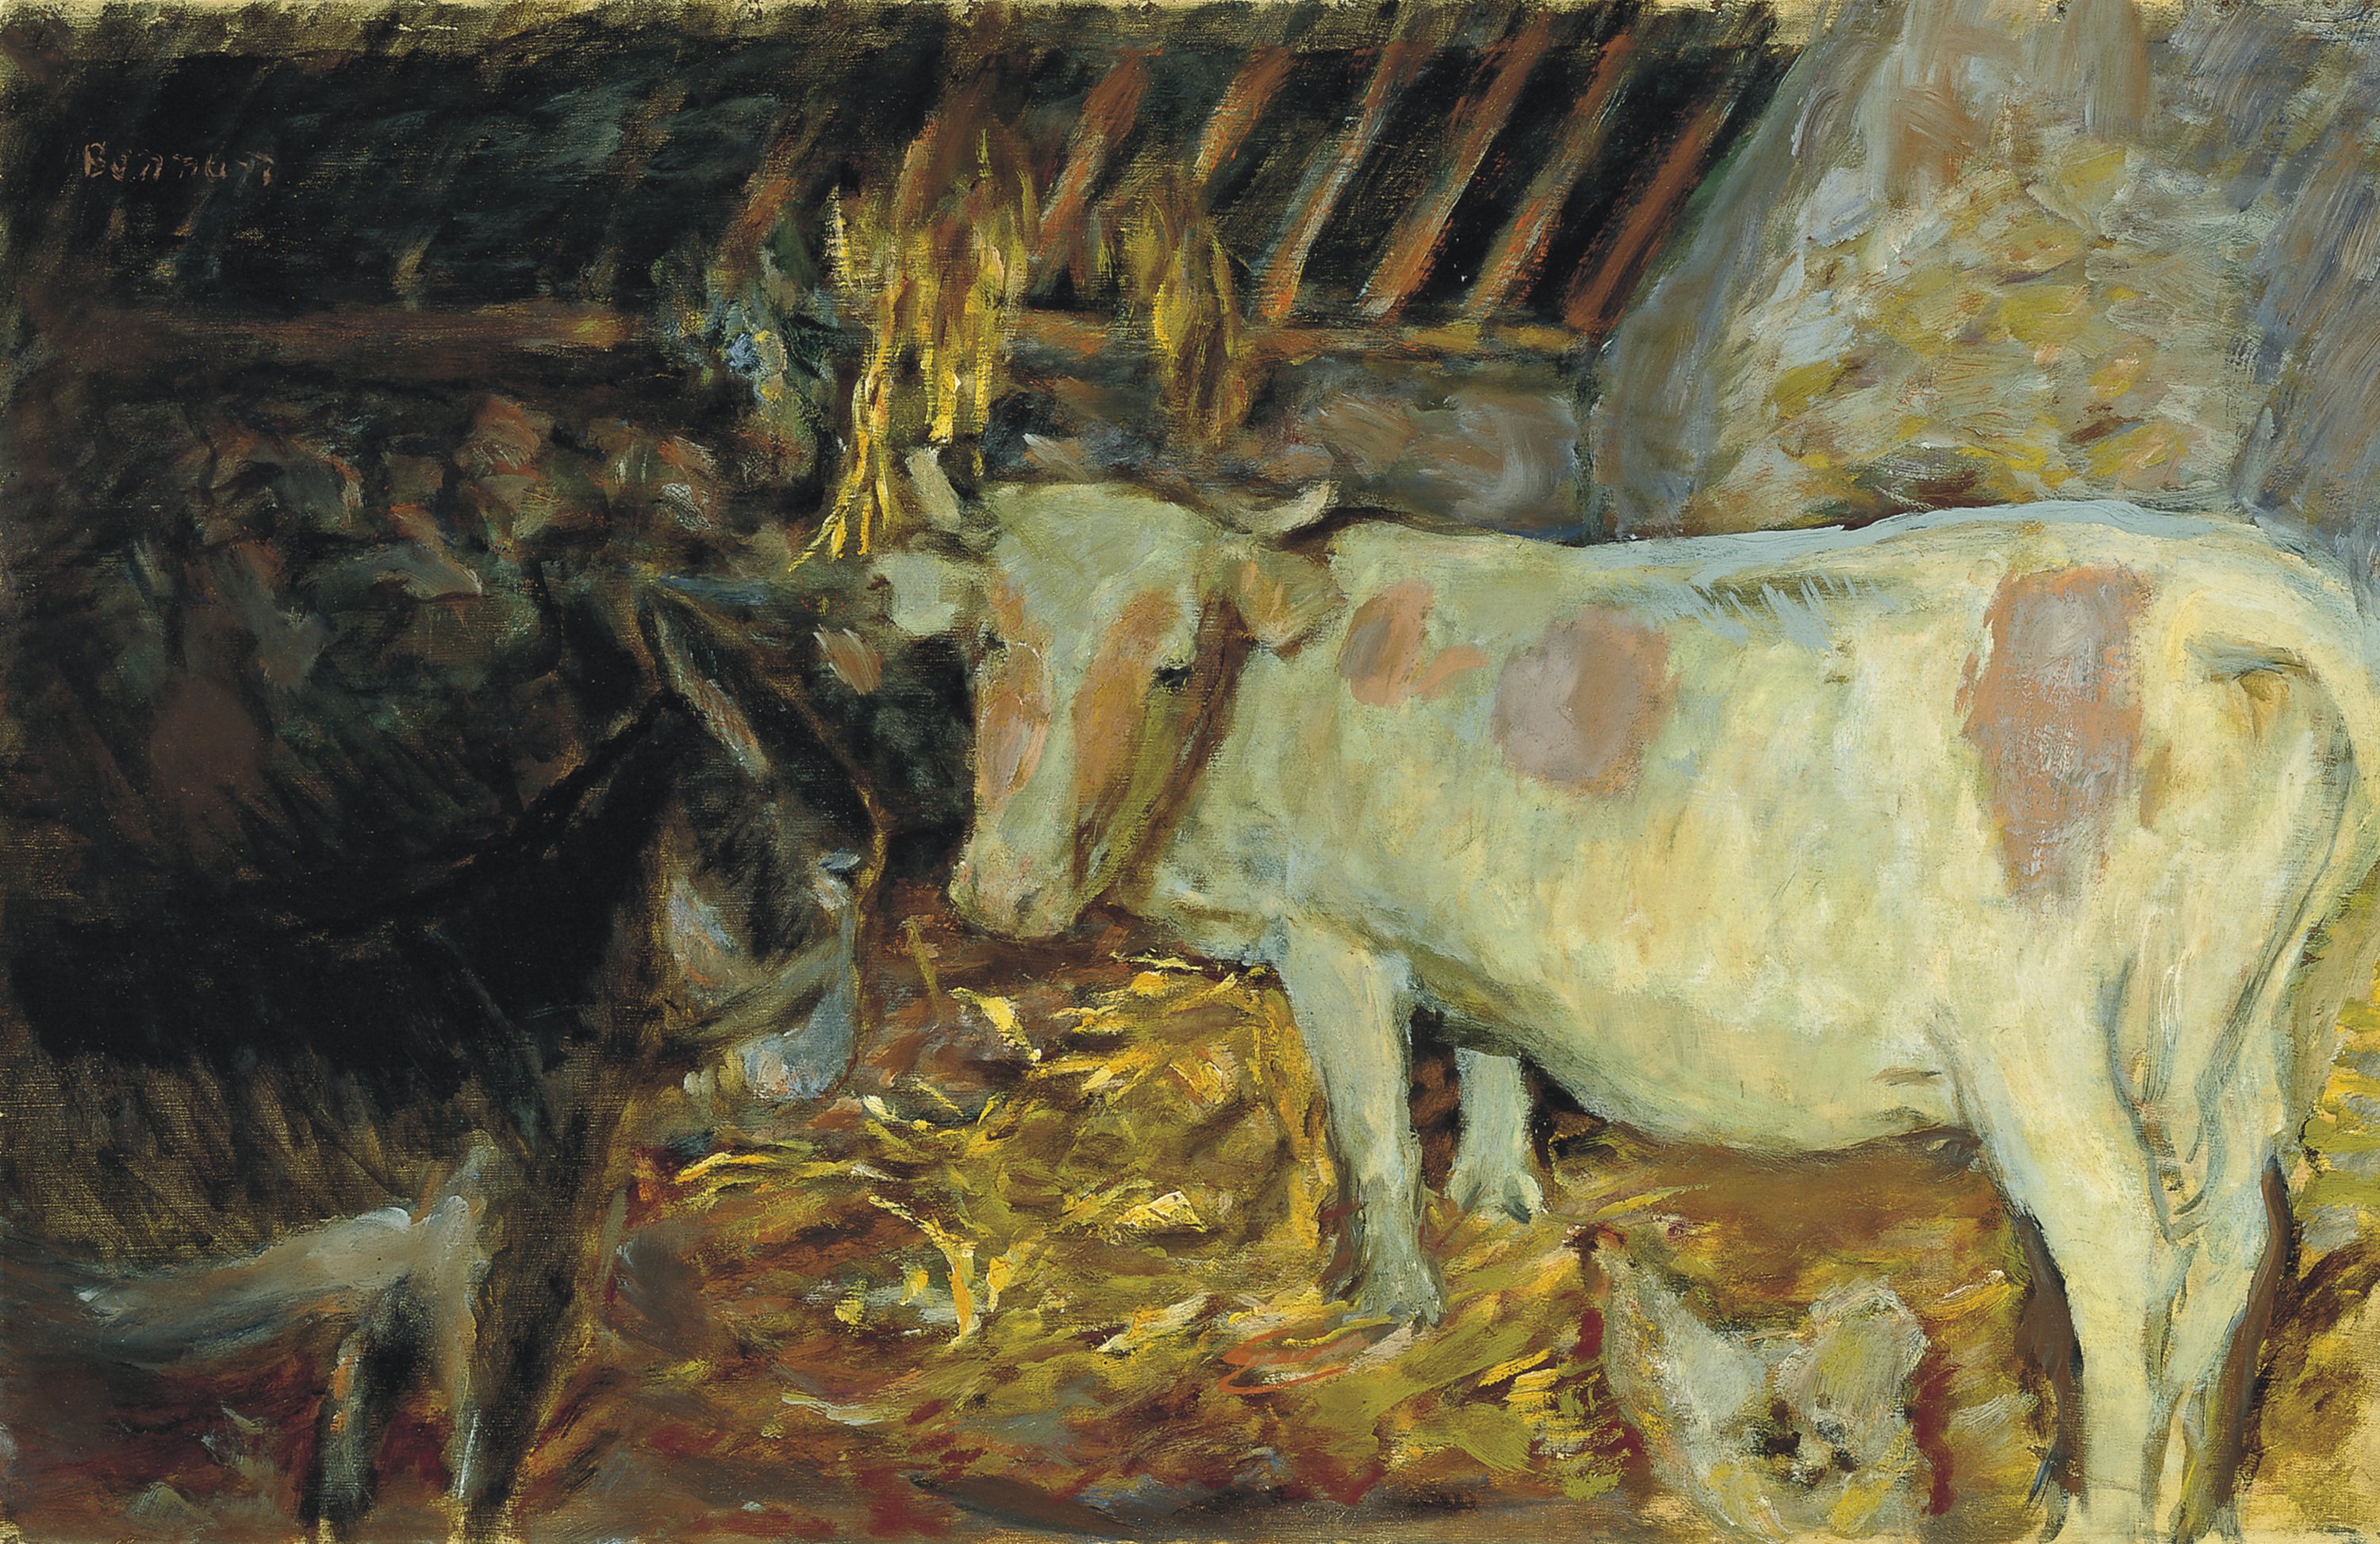 The Barn (Cow in the Stable). El establo (vaca en la cuadra), 1912